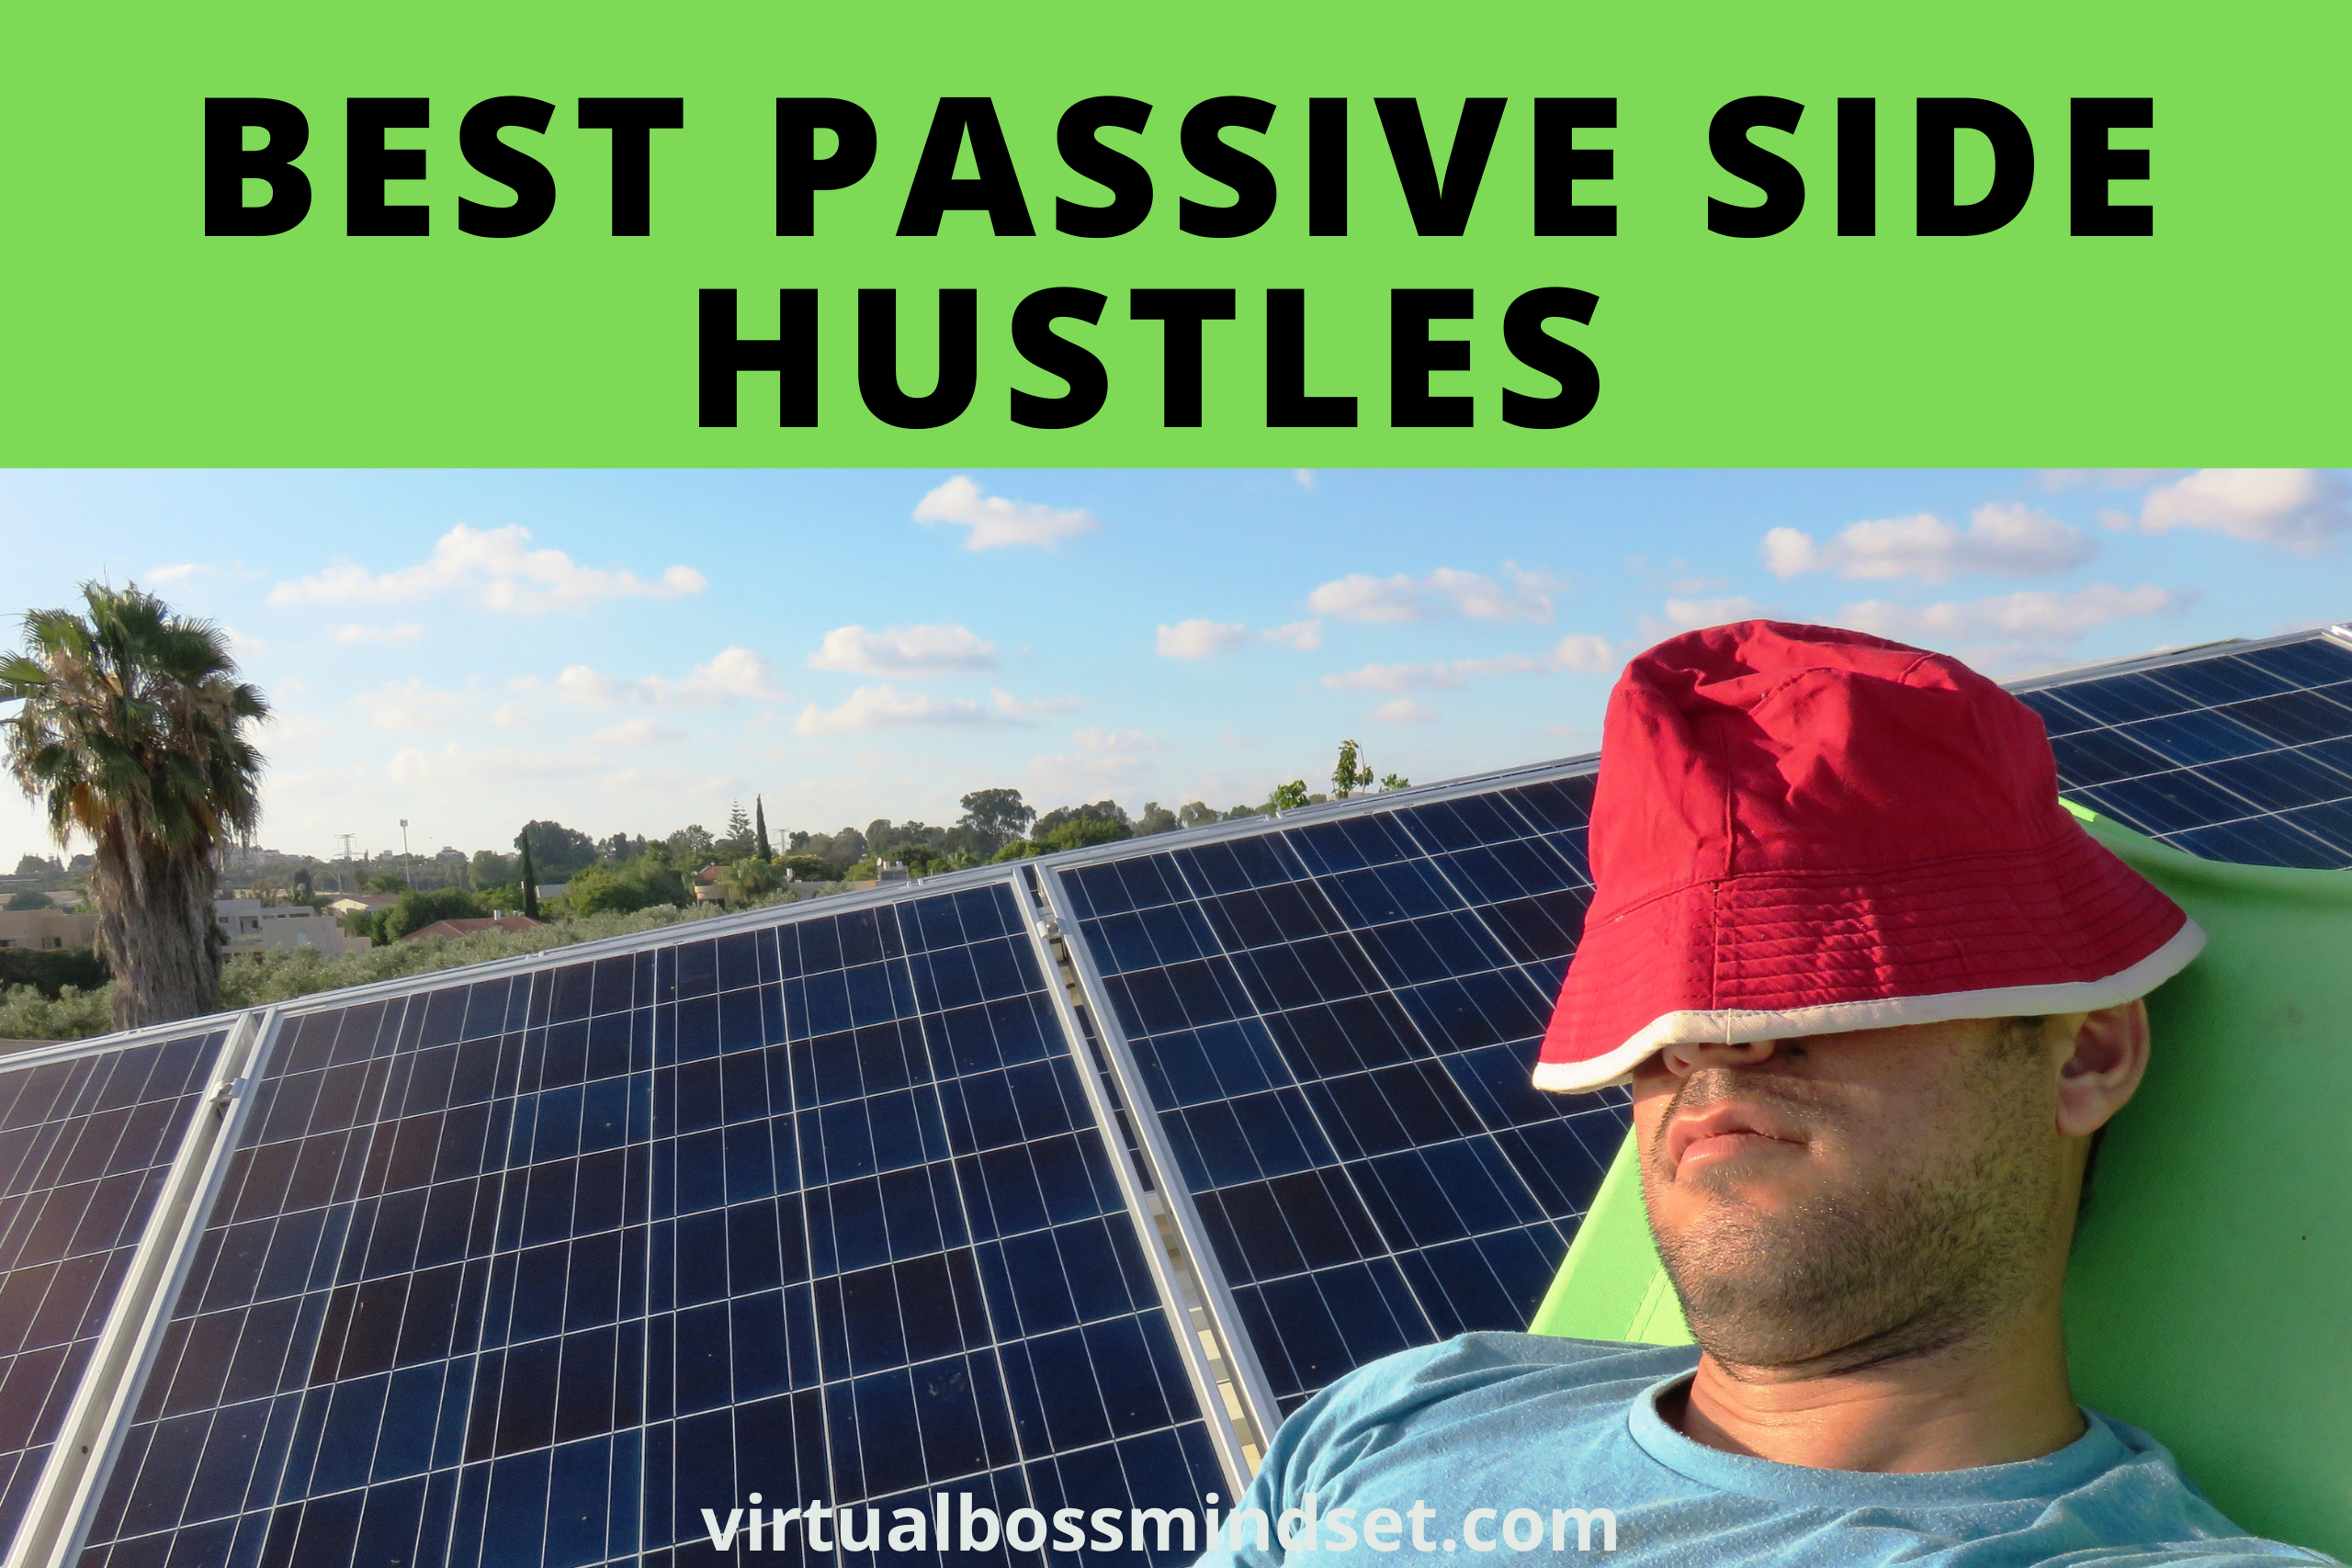 5 Best Passive Side Hustles To Make Money